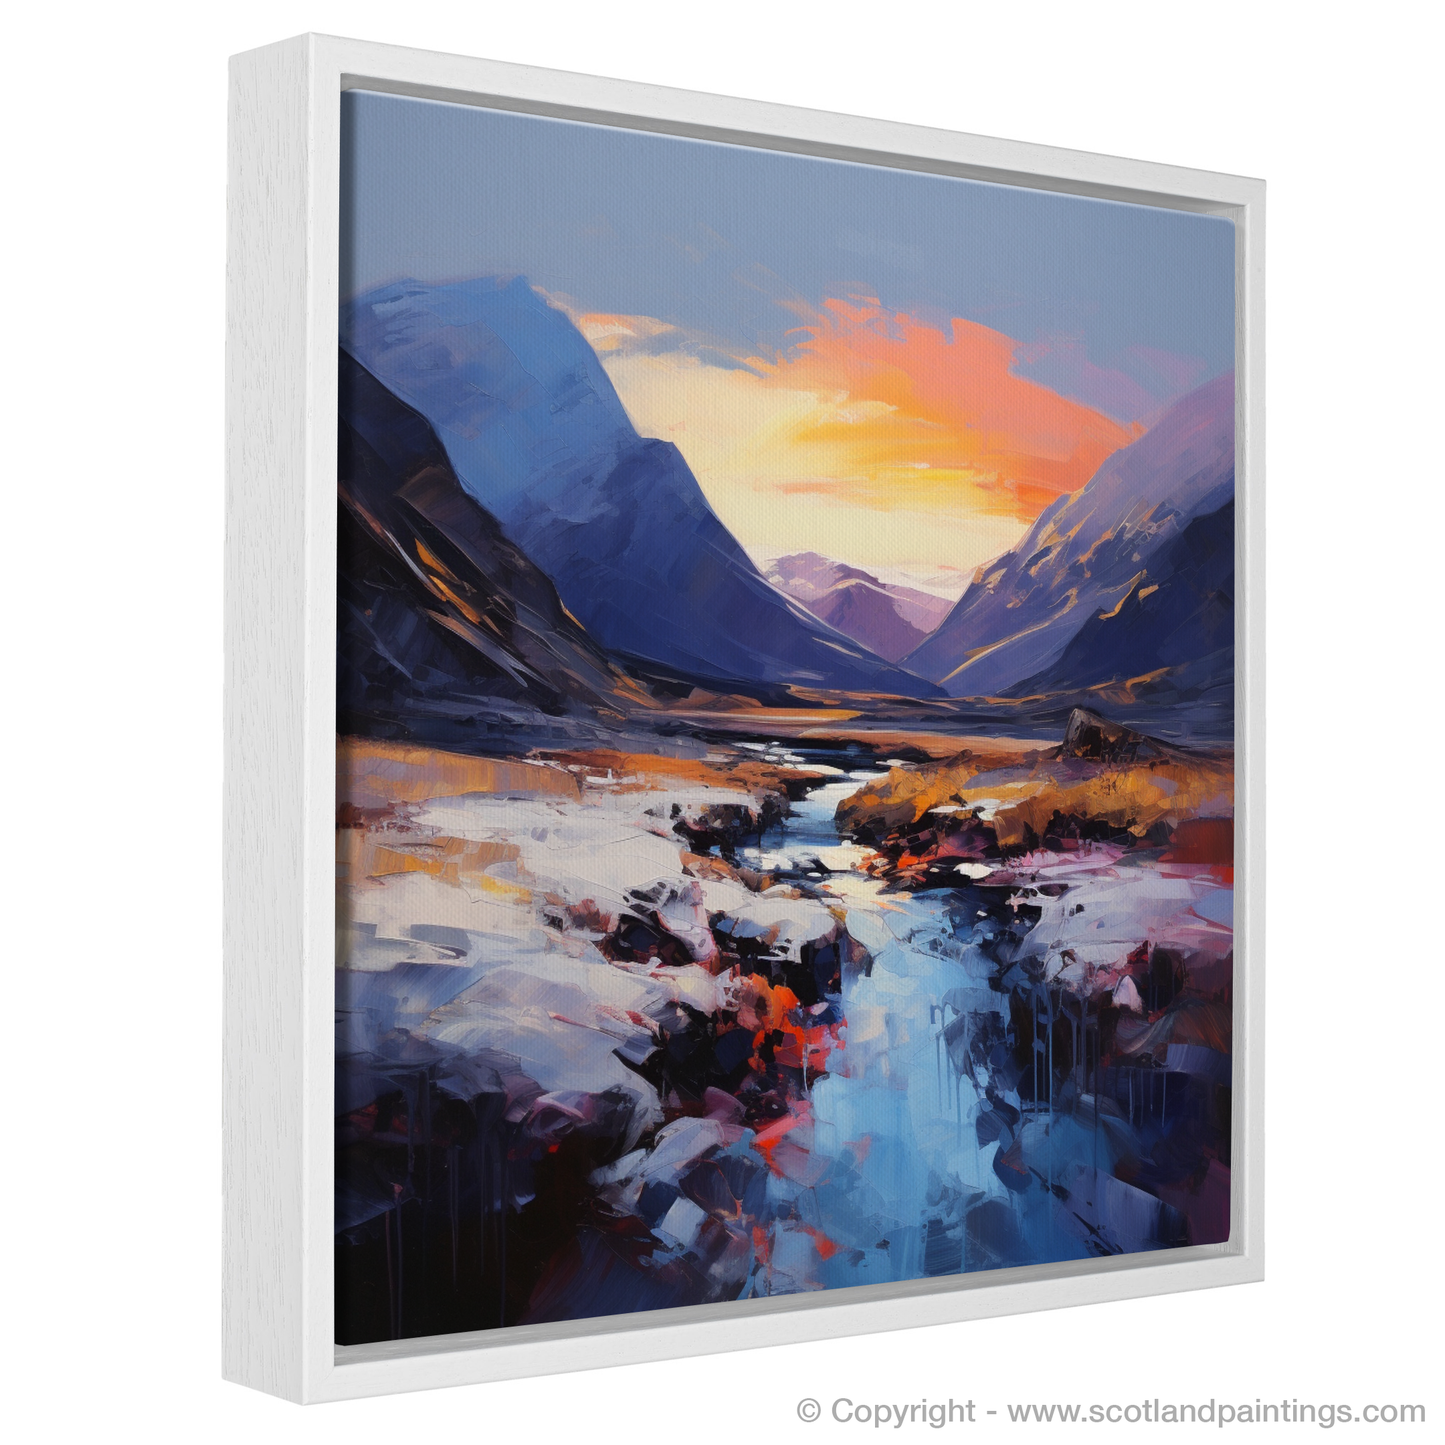 Painting and Art Print of Soft twilight on slopes in Glencoe entitled "Twilight Embrace on Glencoe Slopes".